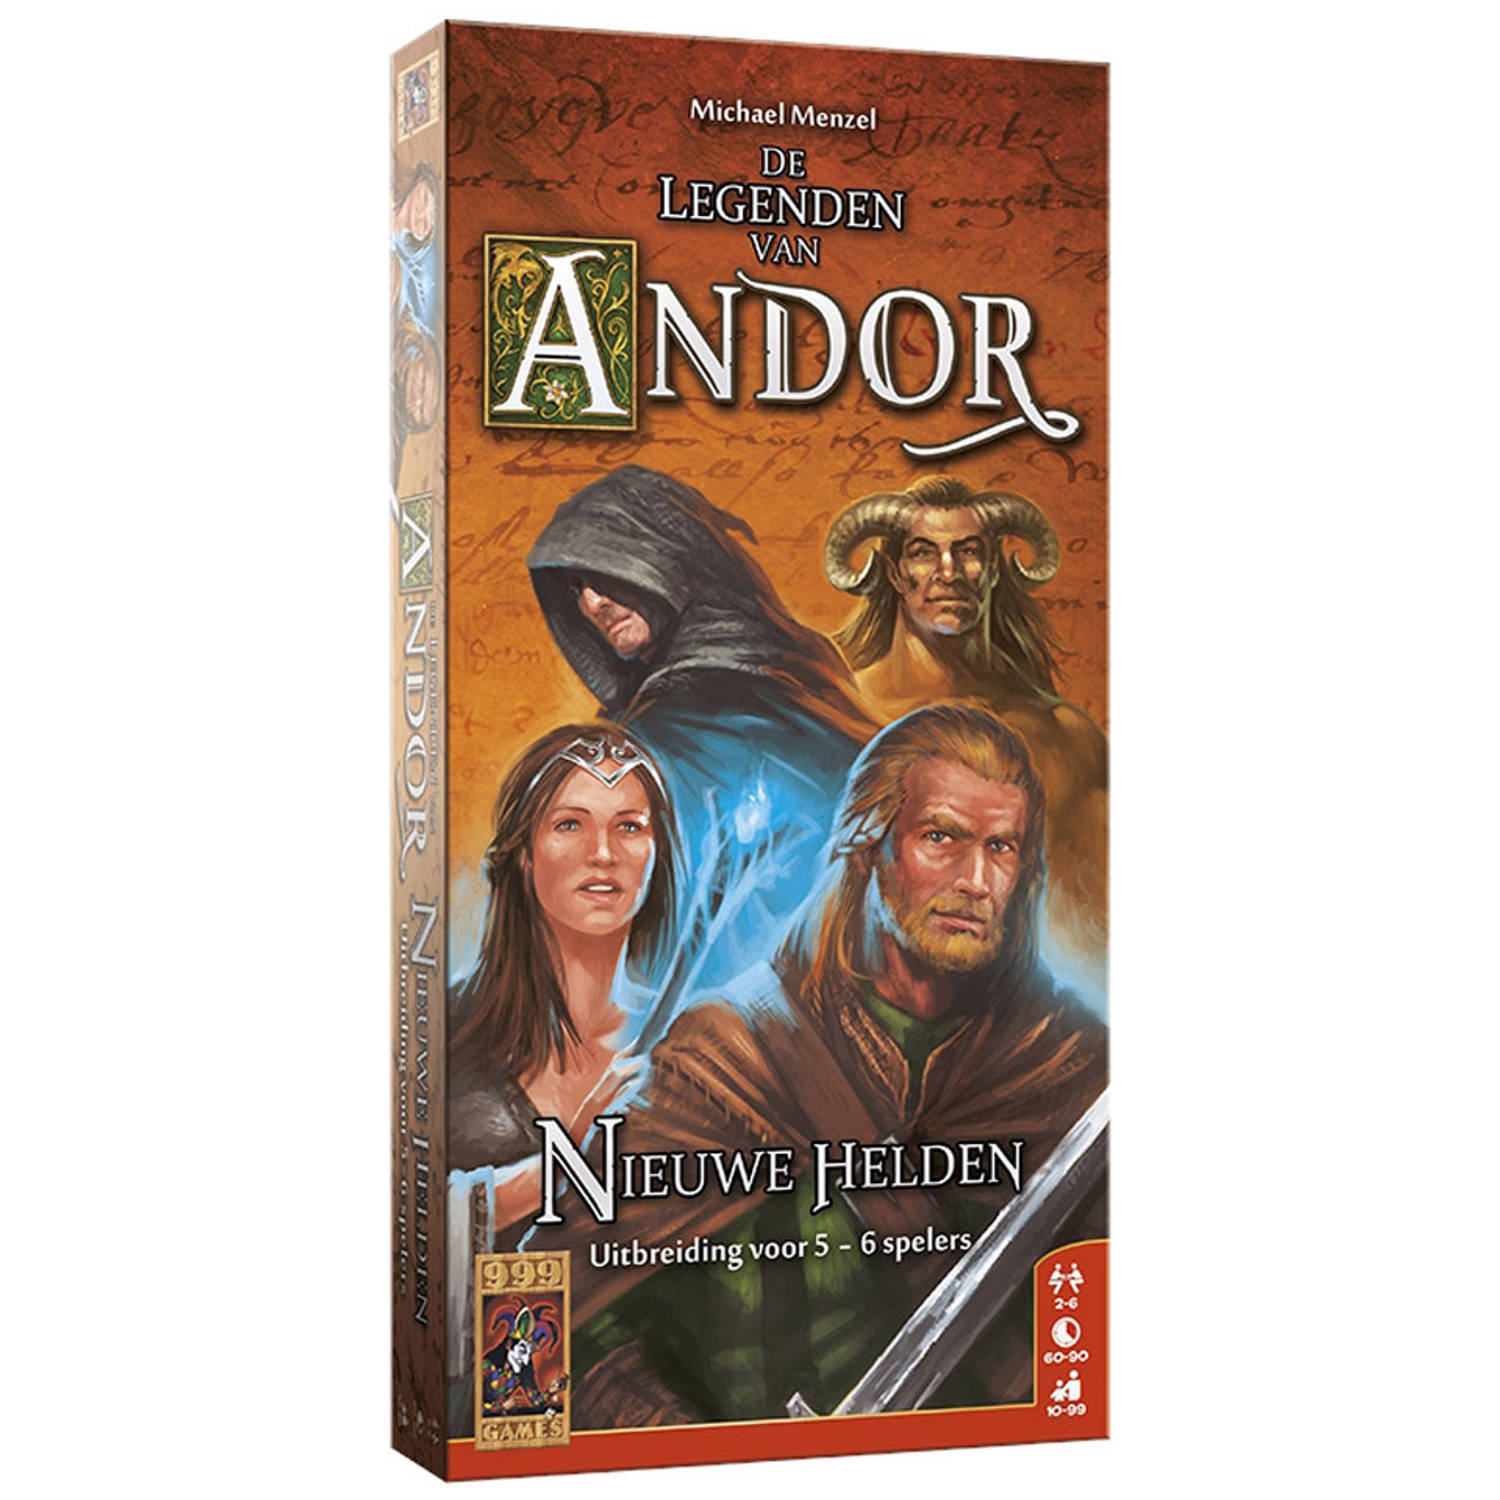 De Legenden van Andor: Nieuwe Helden 5-6 Spelers